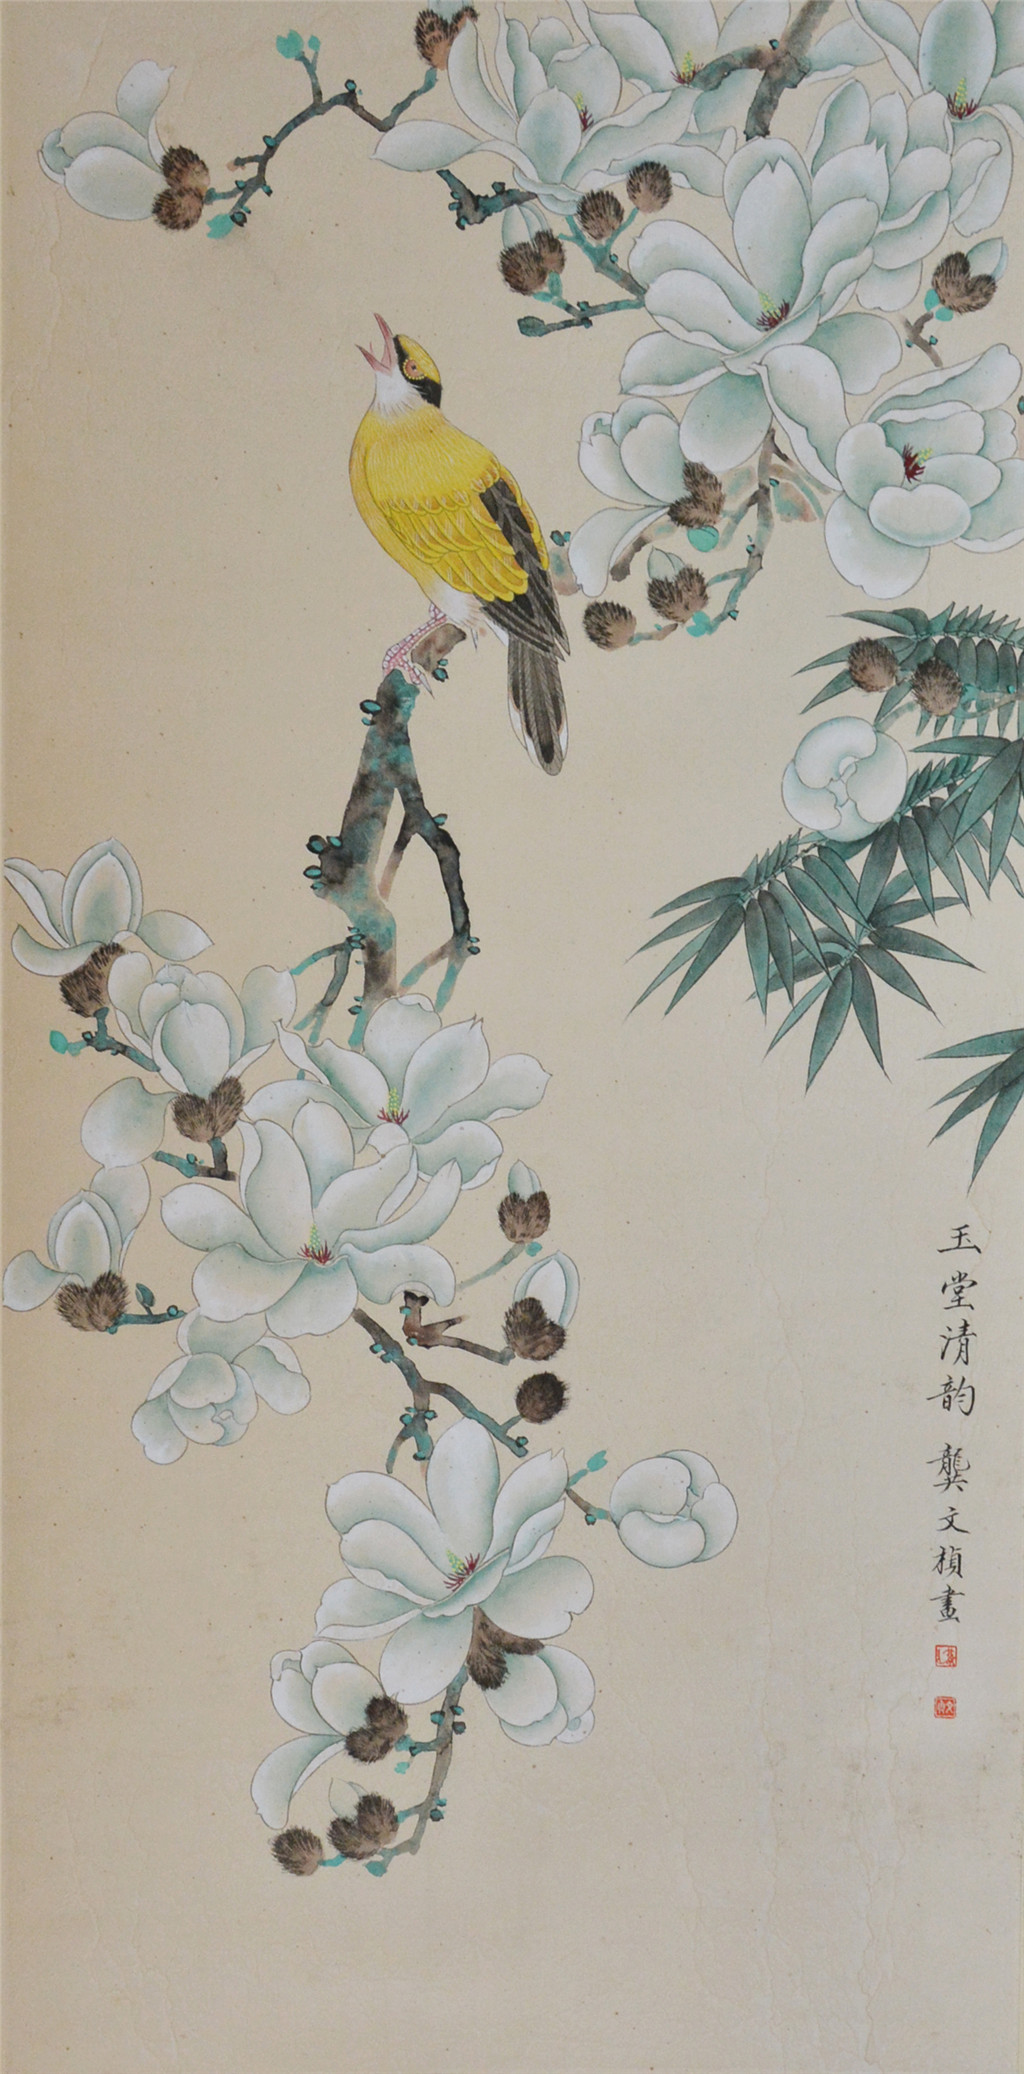 龚文桢 (1945-) 花鸟 